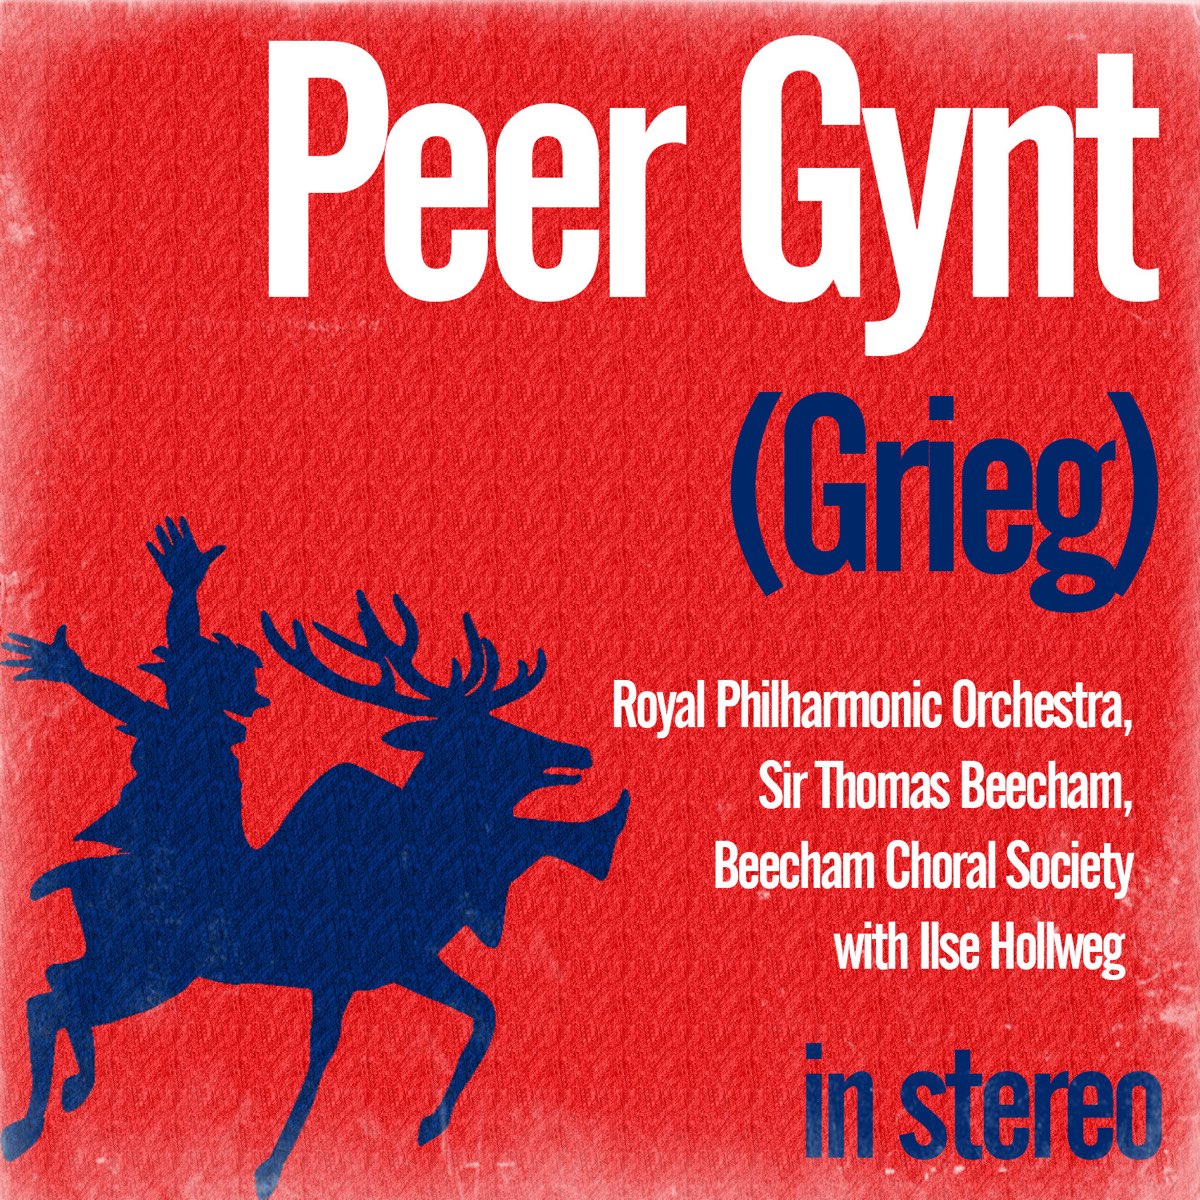 Grieg peer gynt. Peer Gynt. Норвегия peer Gynt Sculpture. Peer Gynt Solveig's Song. Peer Gynt (1-12) & old Norwegian.